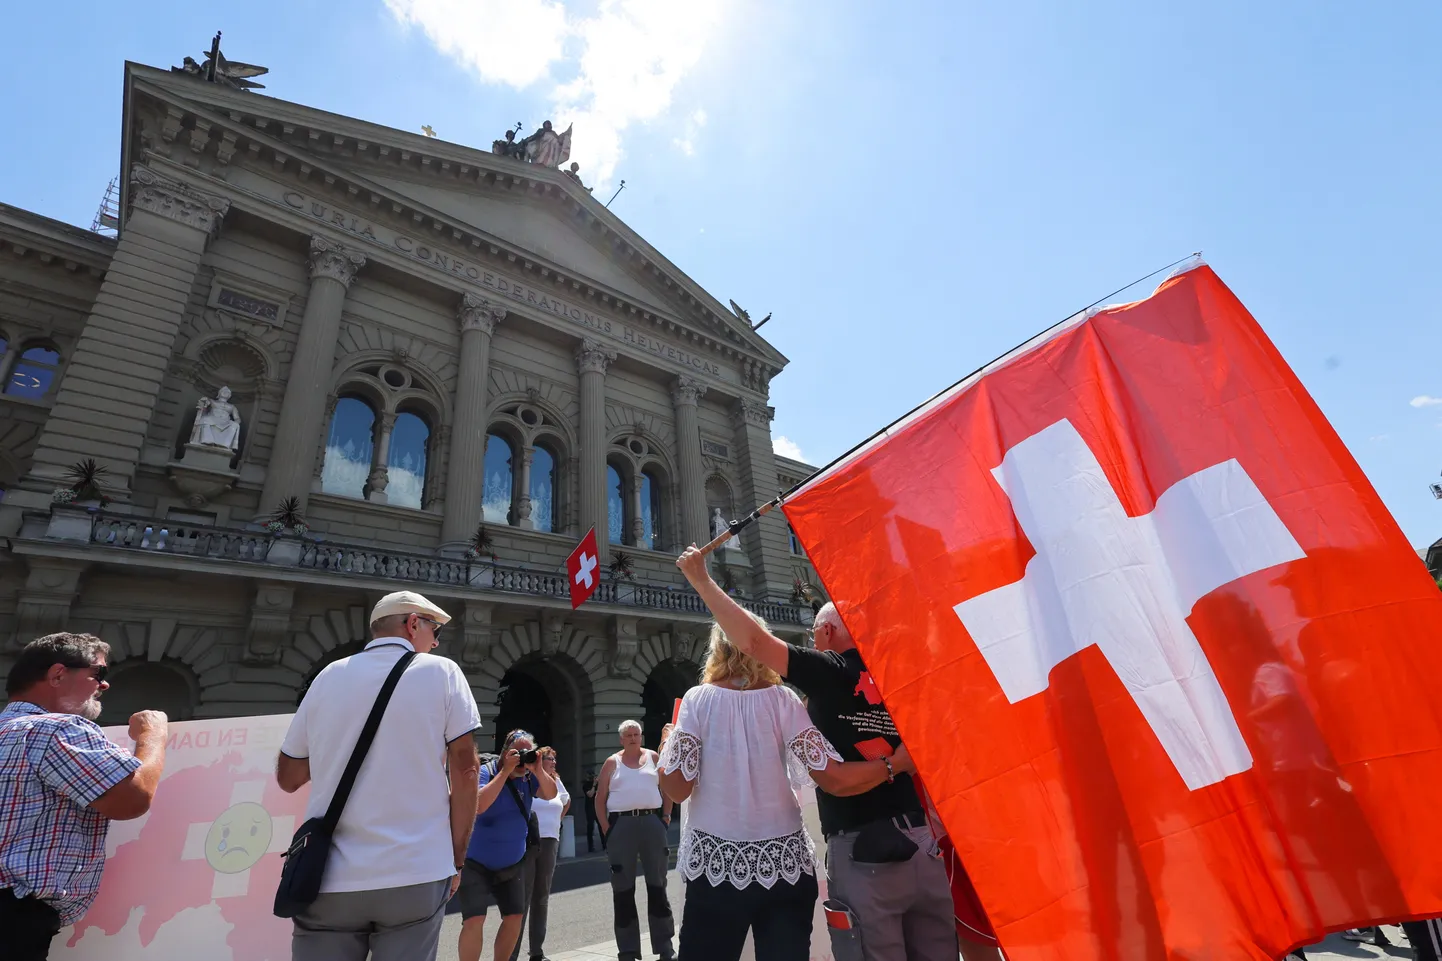 Šveitsi lippudega inimesed Bernis parlamendihoone ees. Pilt on illustreeriv.